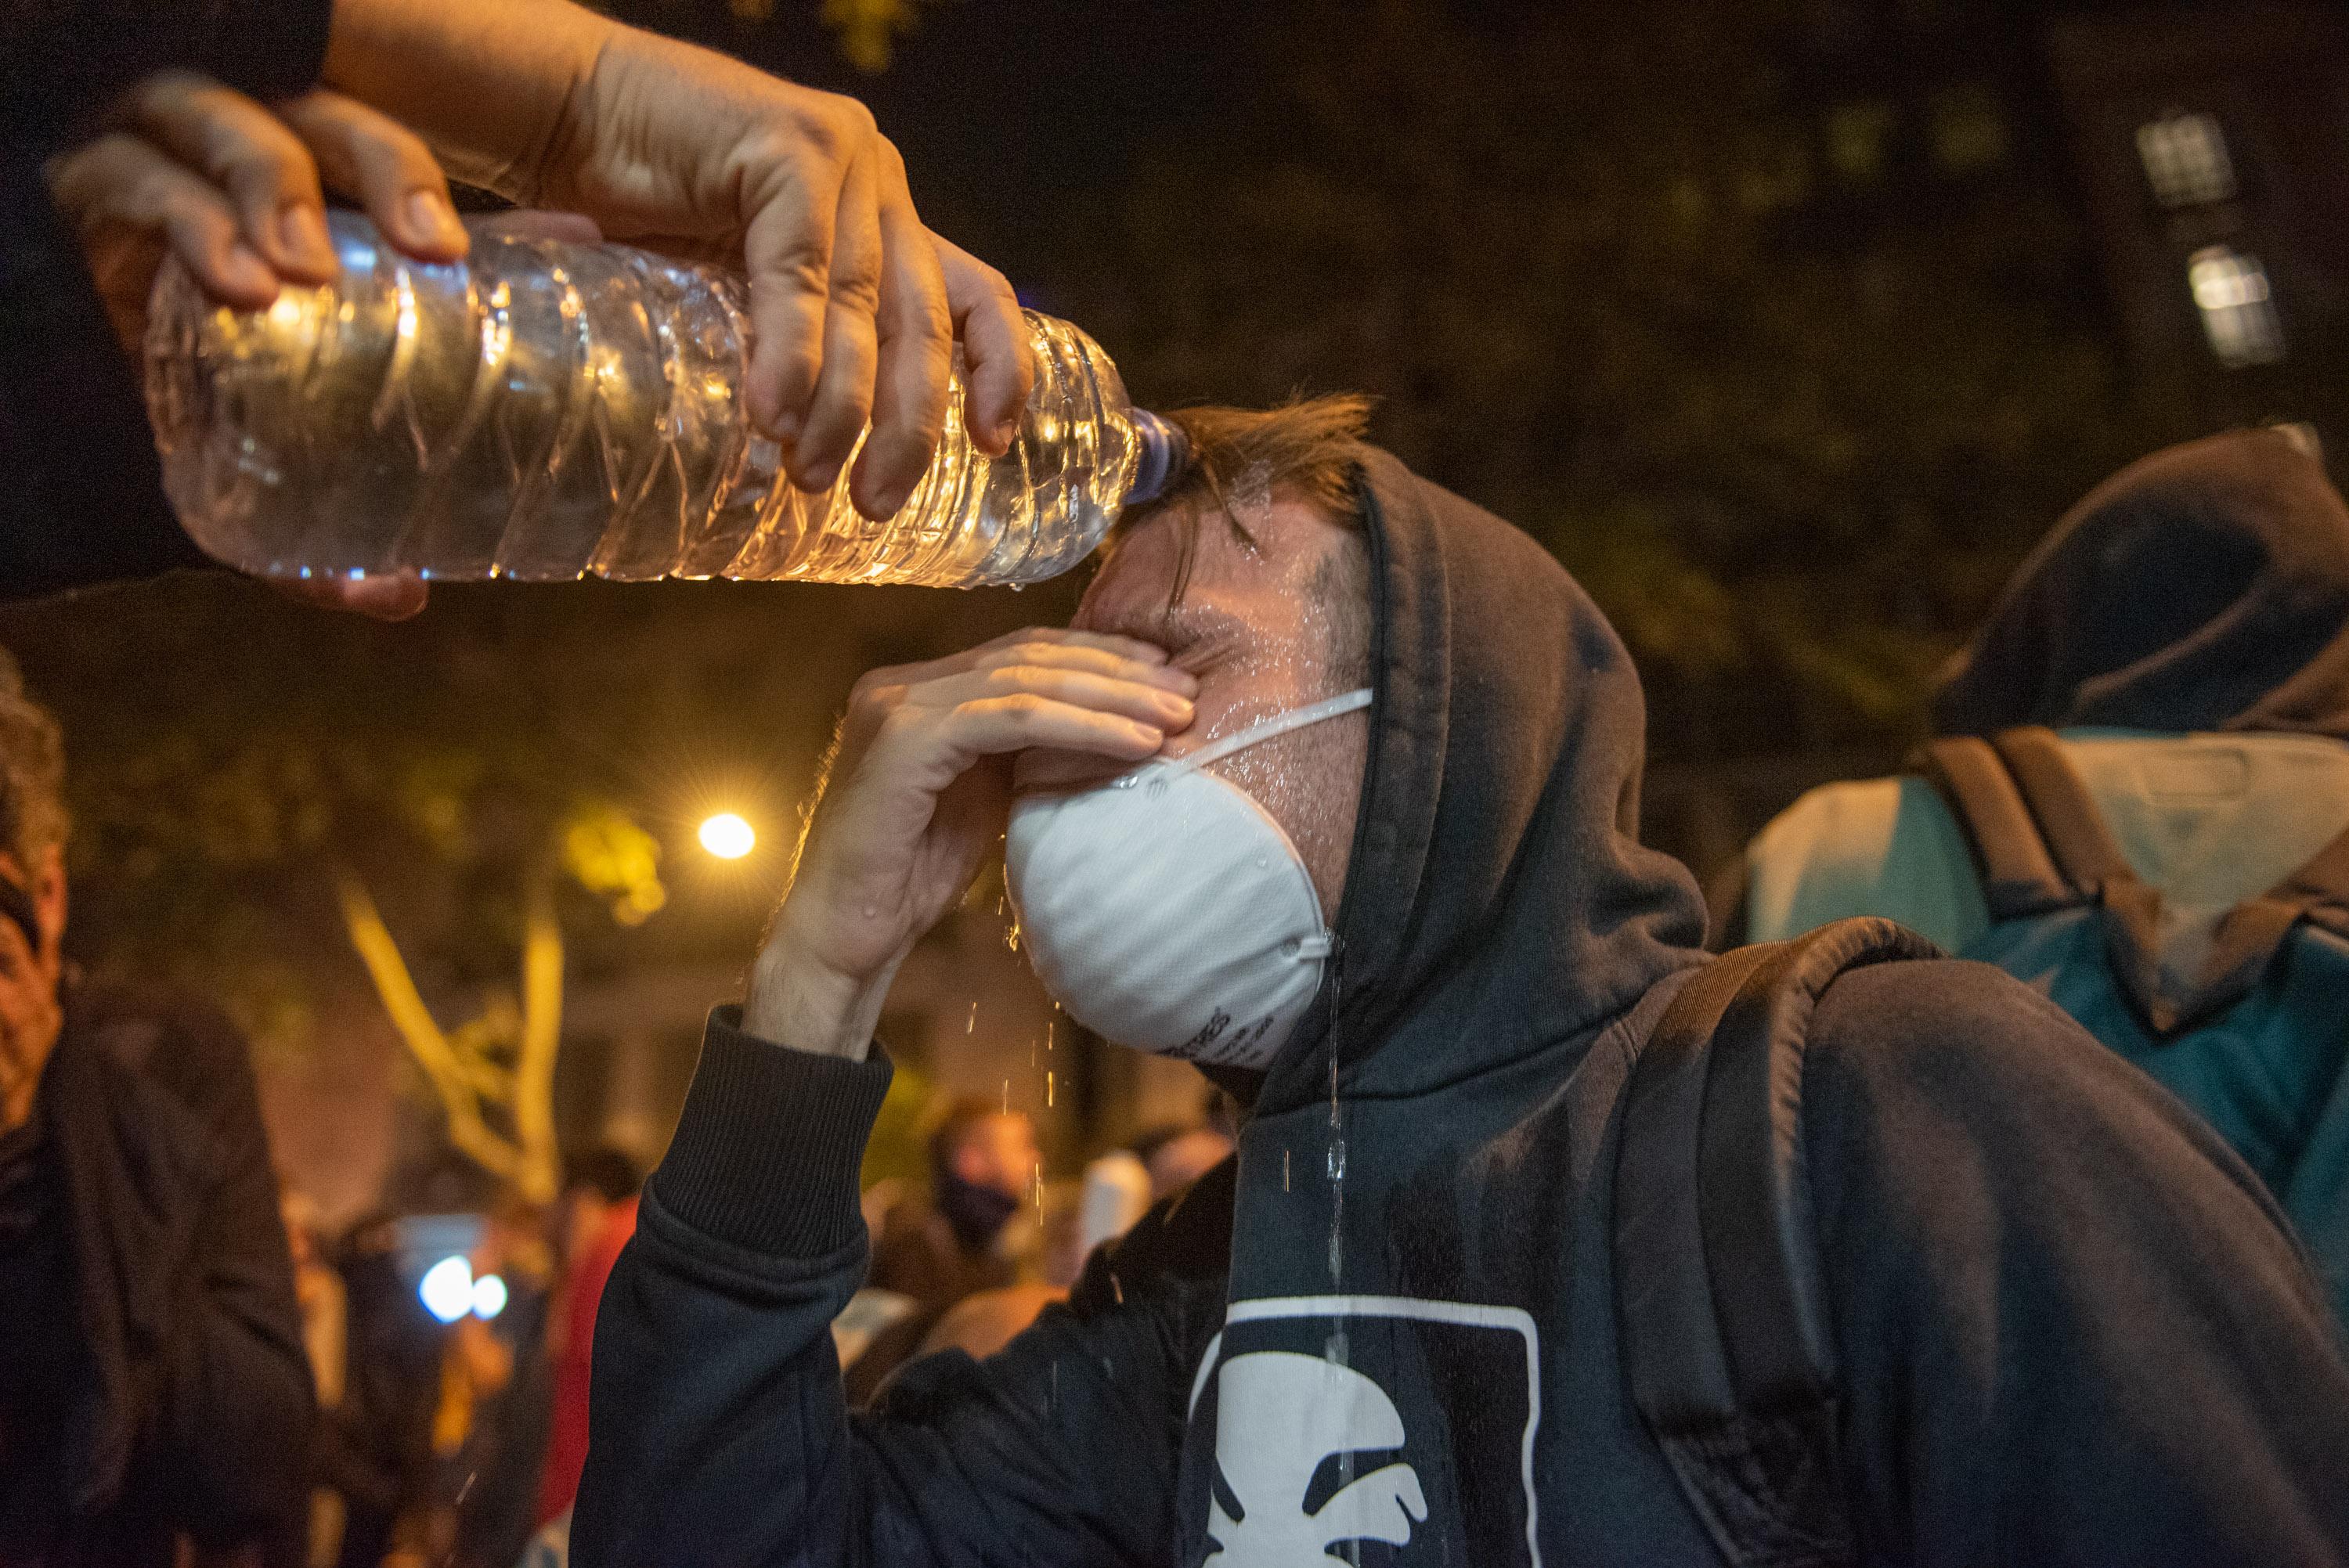 Un manifestante echa agua a otro con una mascarilla blanca durante los disturbios en la Plaza de Urquinaona en Barcelona a 18 de octubre de 2019 